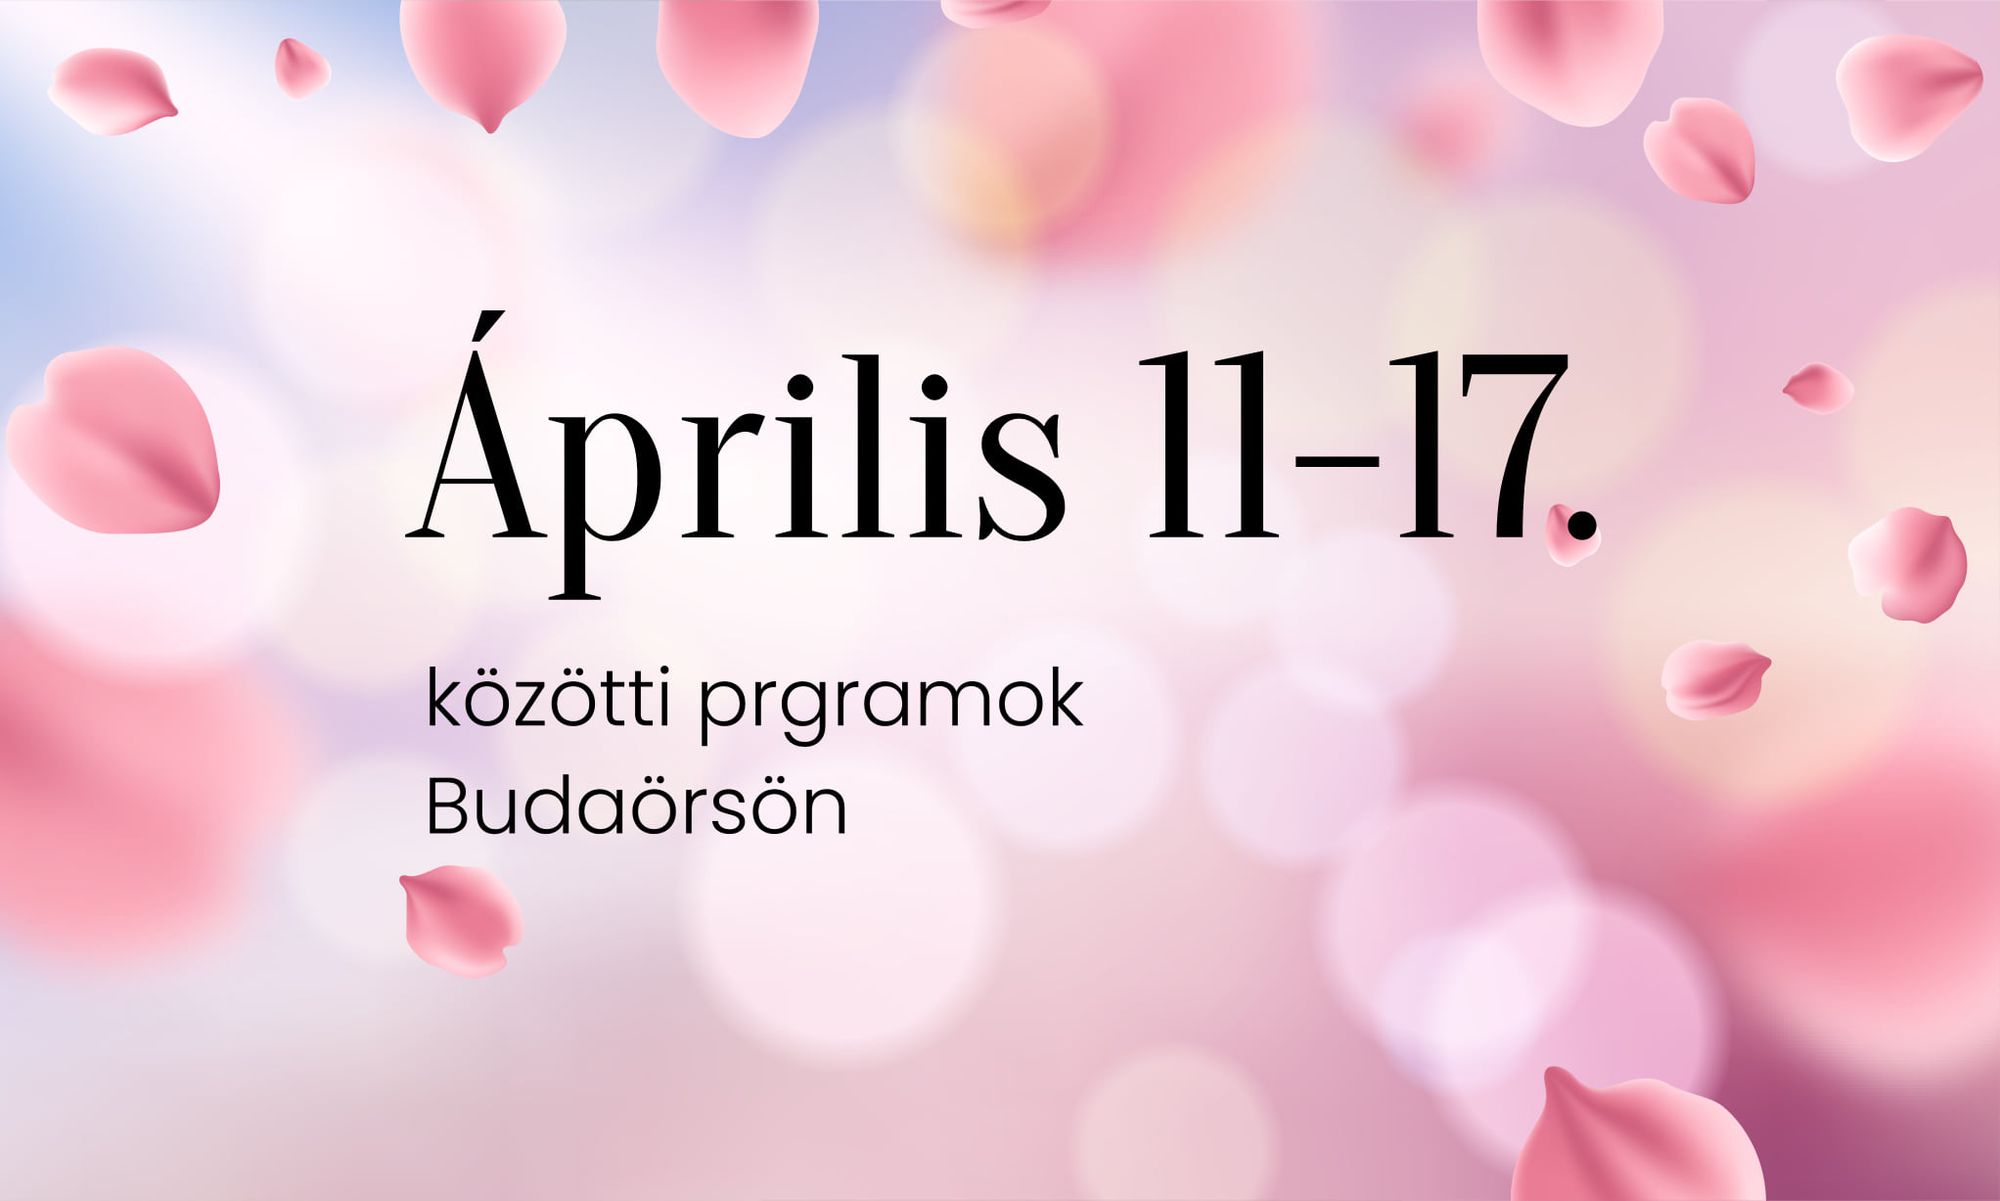 Április 11-17. közötti programok Budaörsön